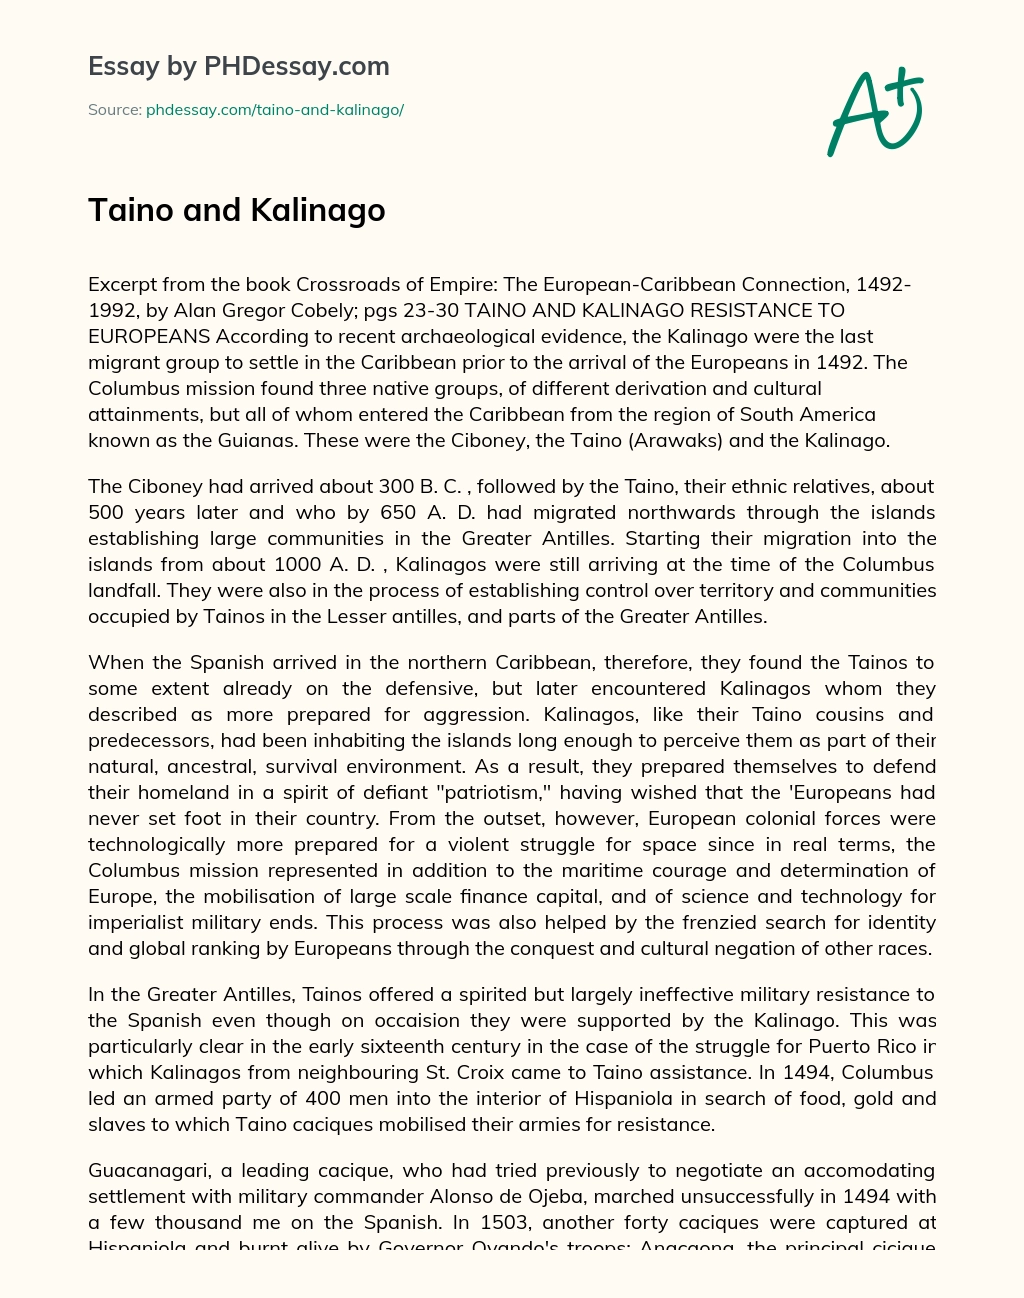 Taino and Kalinago essay